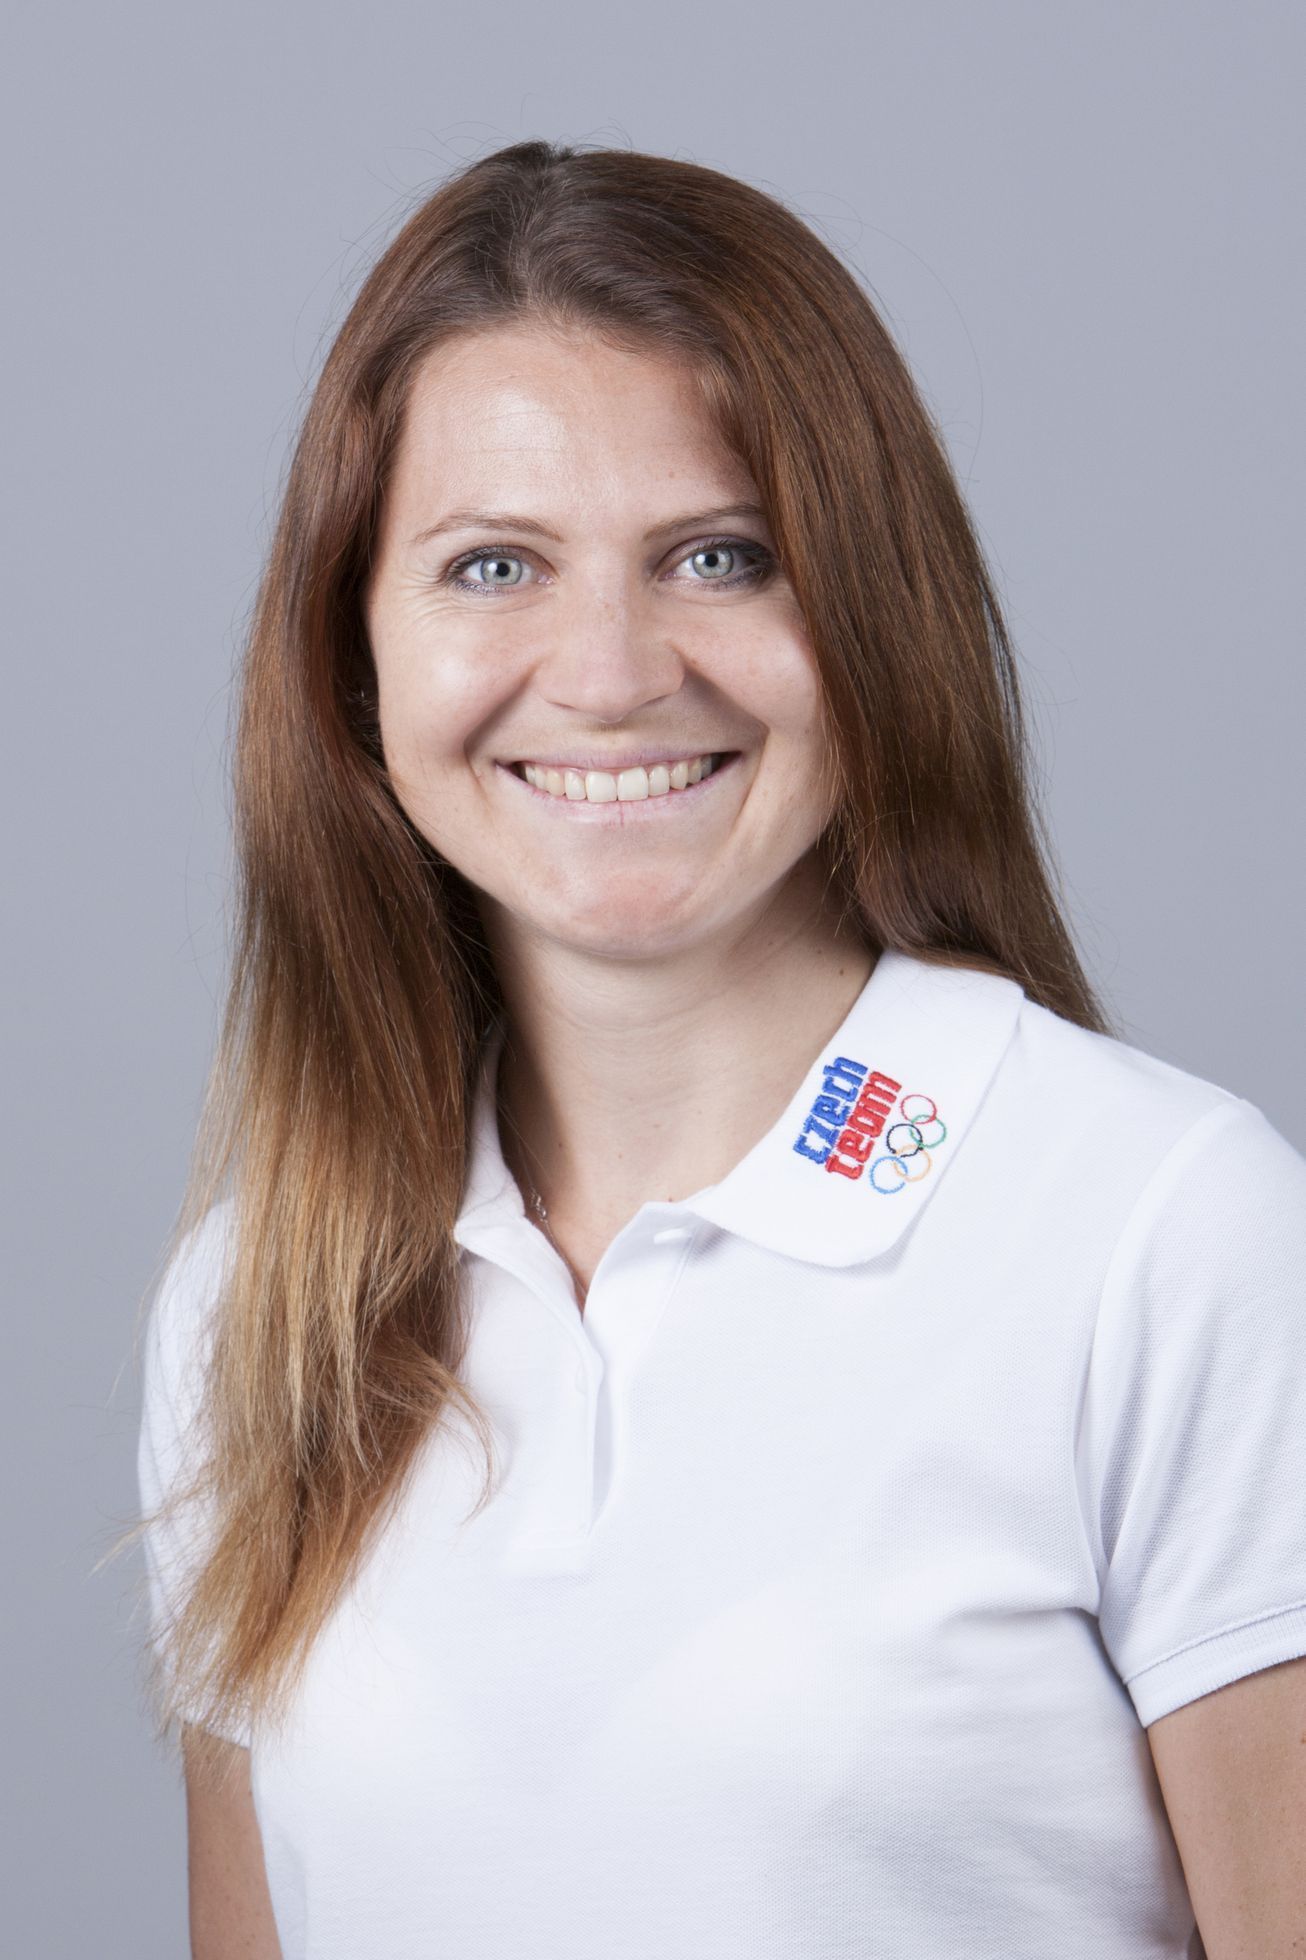 Lucie Šafářová - účastník výpravy na olympiádu v Riu